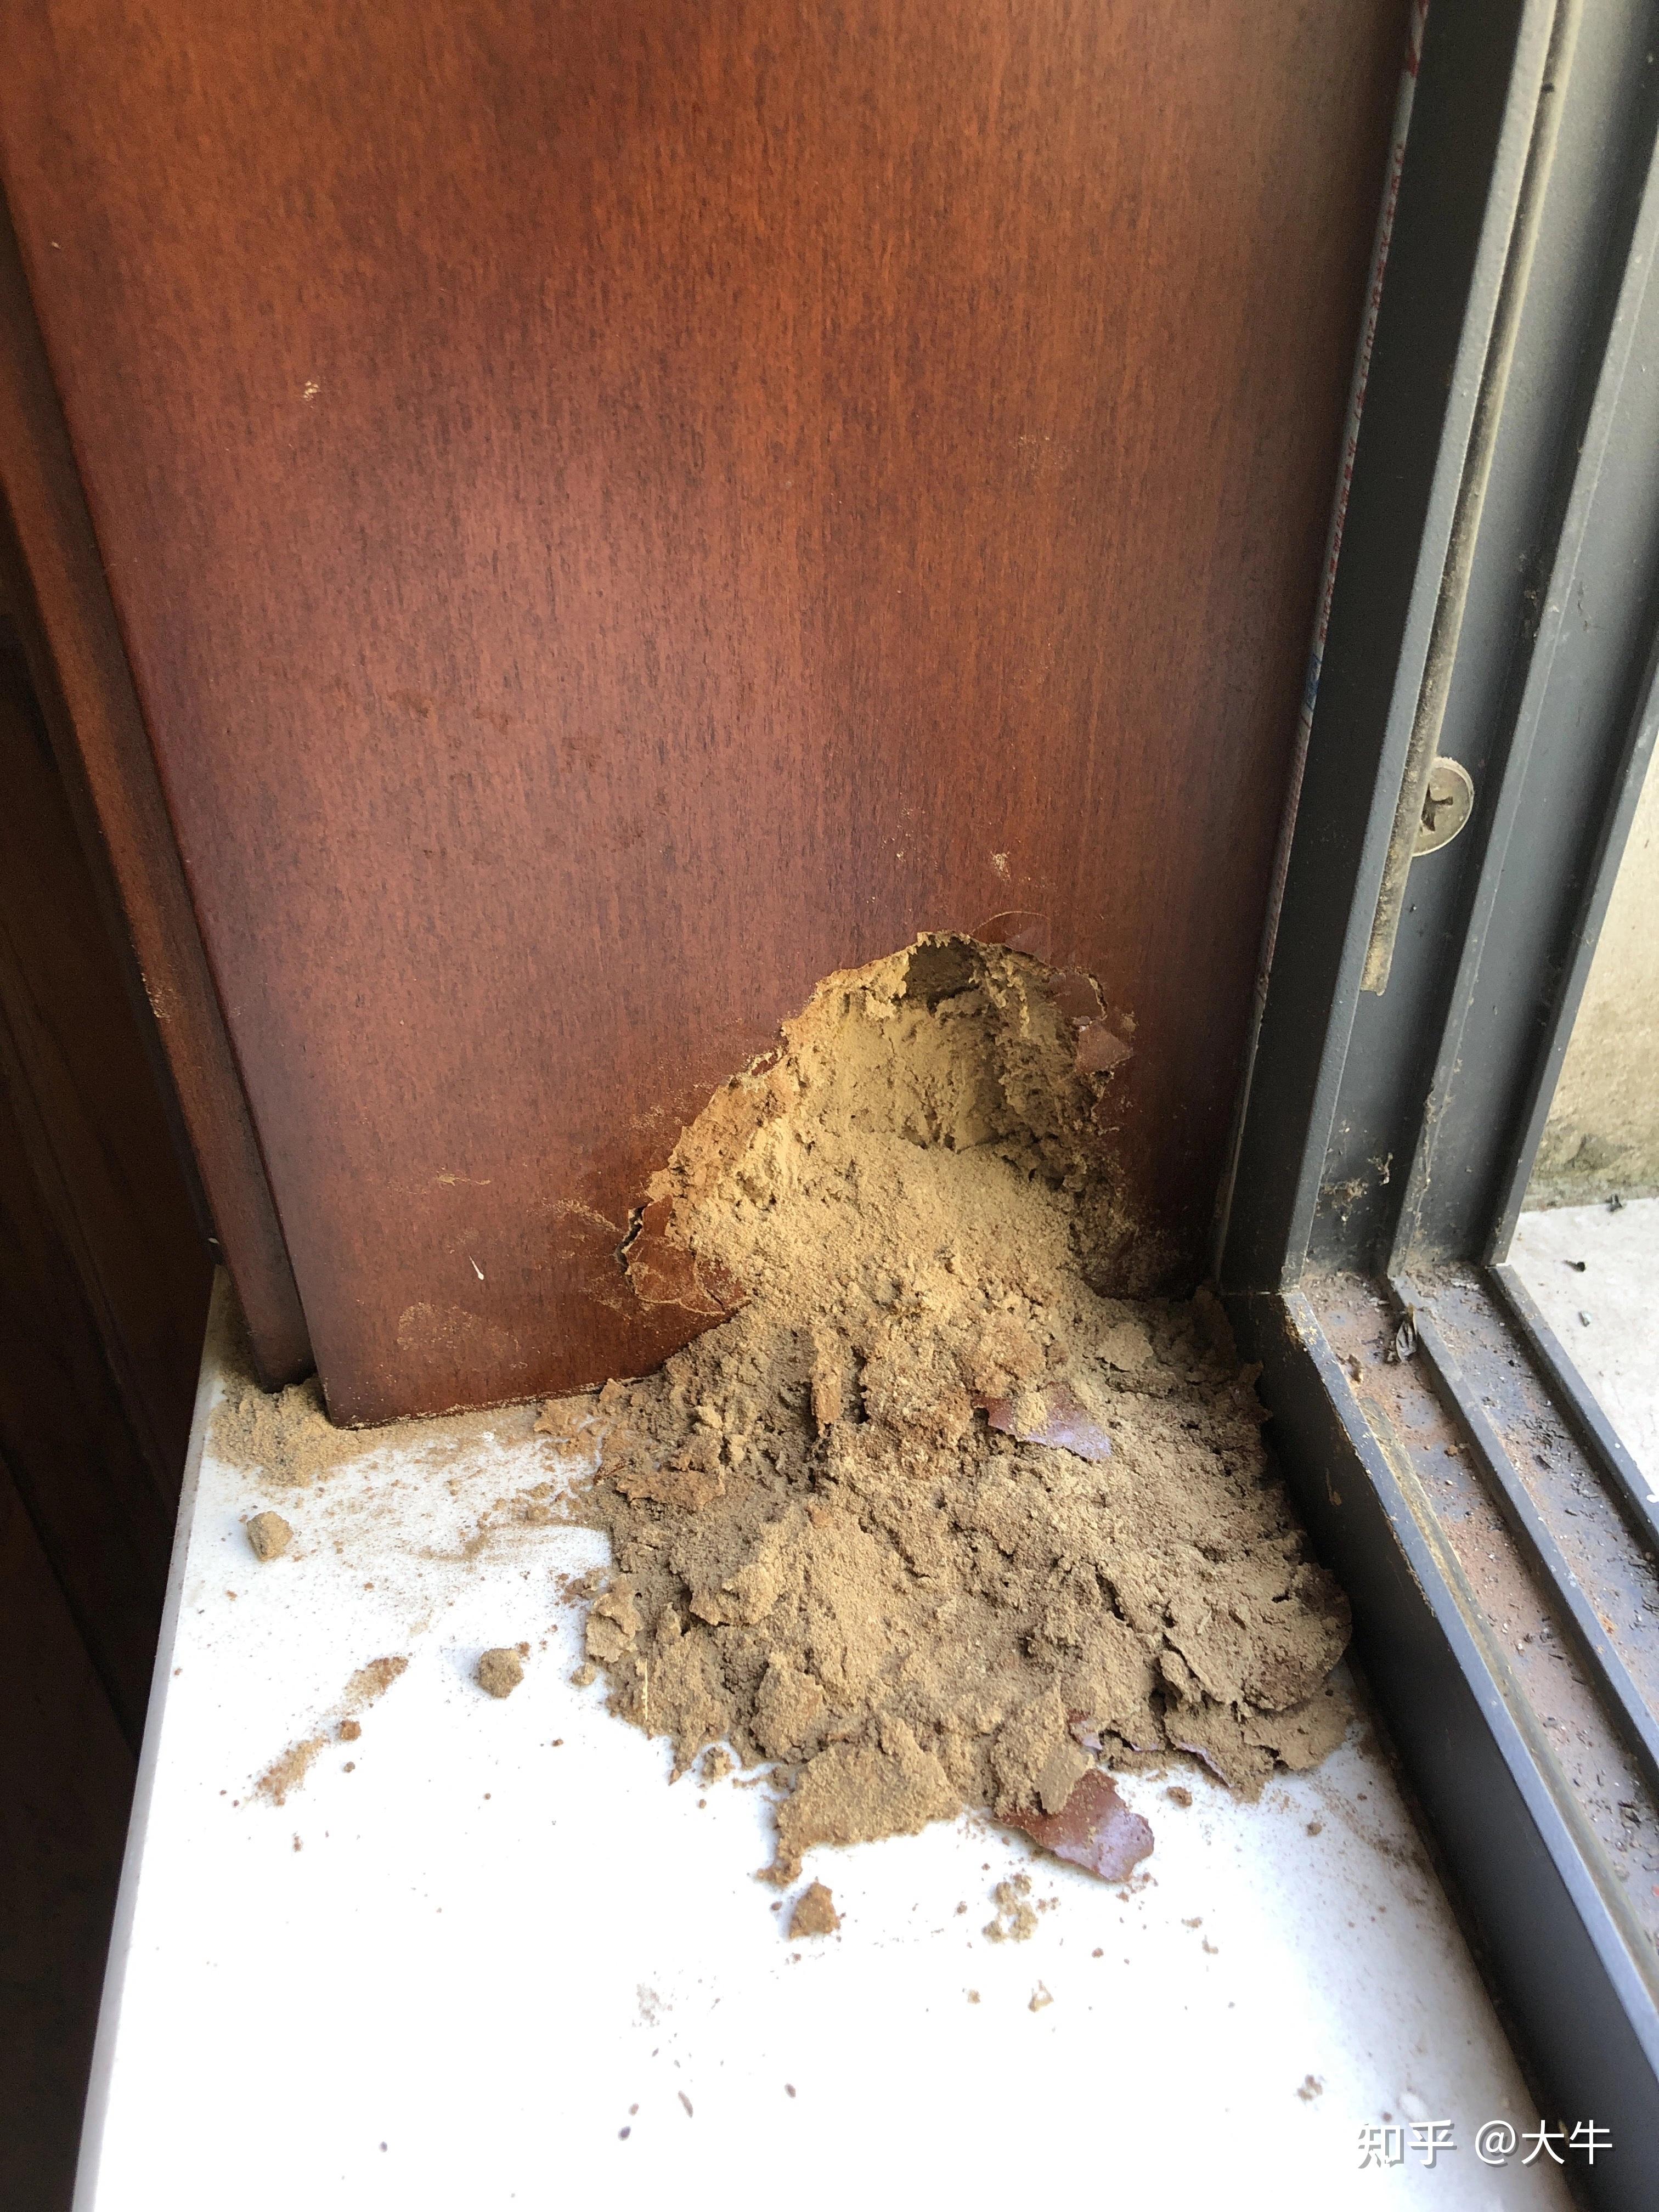 家里的木窗边变成了木屑灰灰求求看看是什么情况是不是有白蚁在吃木料